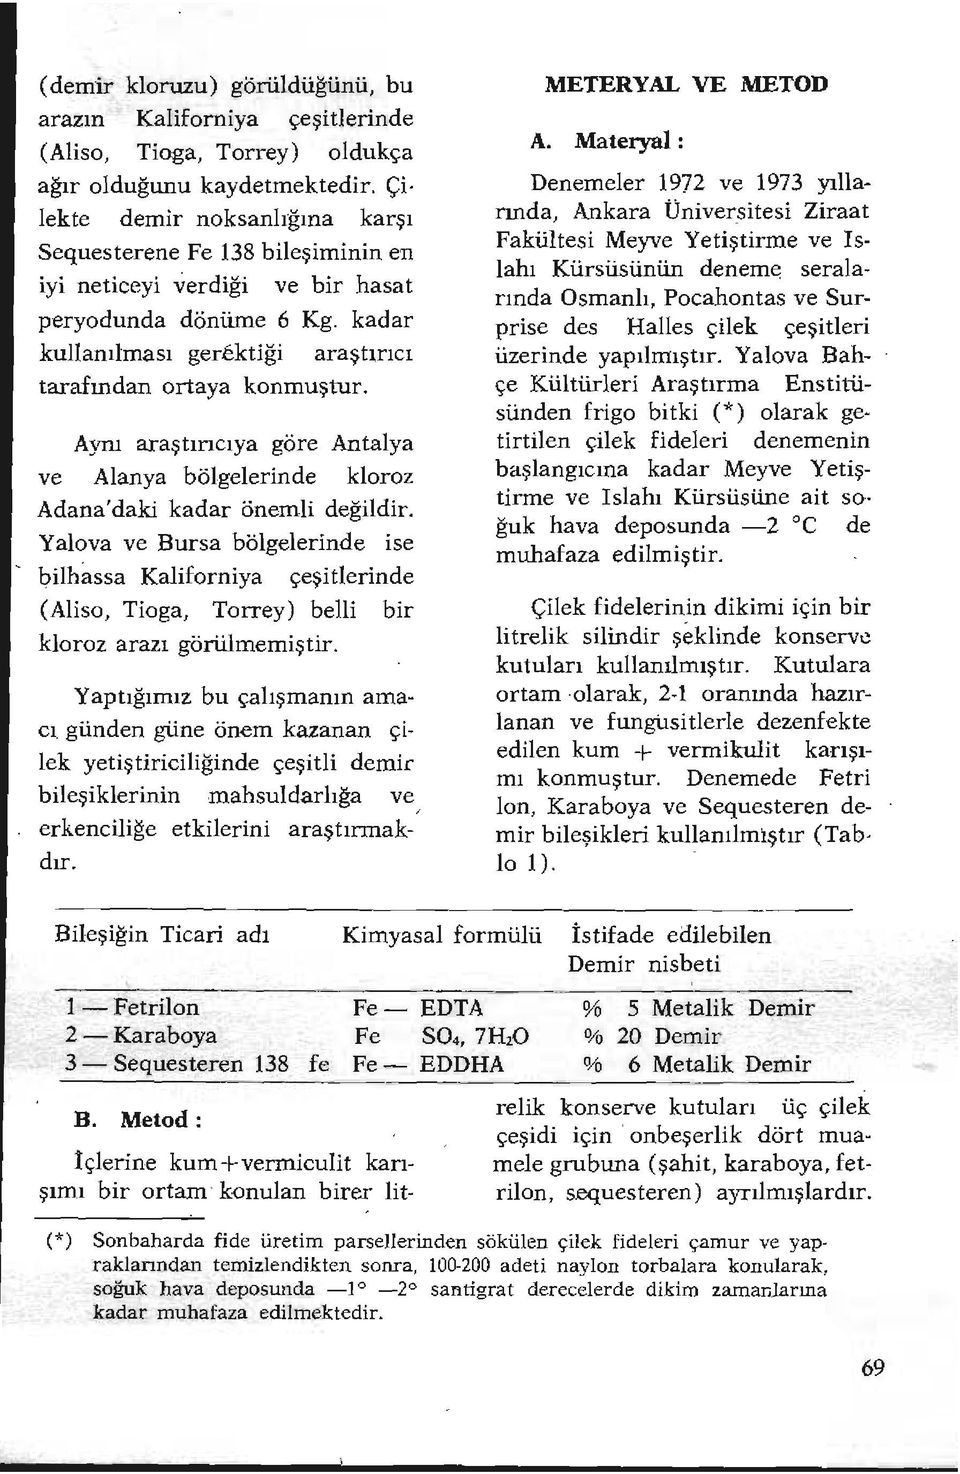 Aynı araştırıcıya göre Antalya ve Alanya bölgelerinde kloroz Adana'daki kadar önemli değildir.